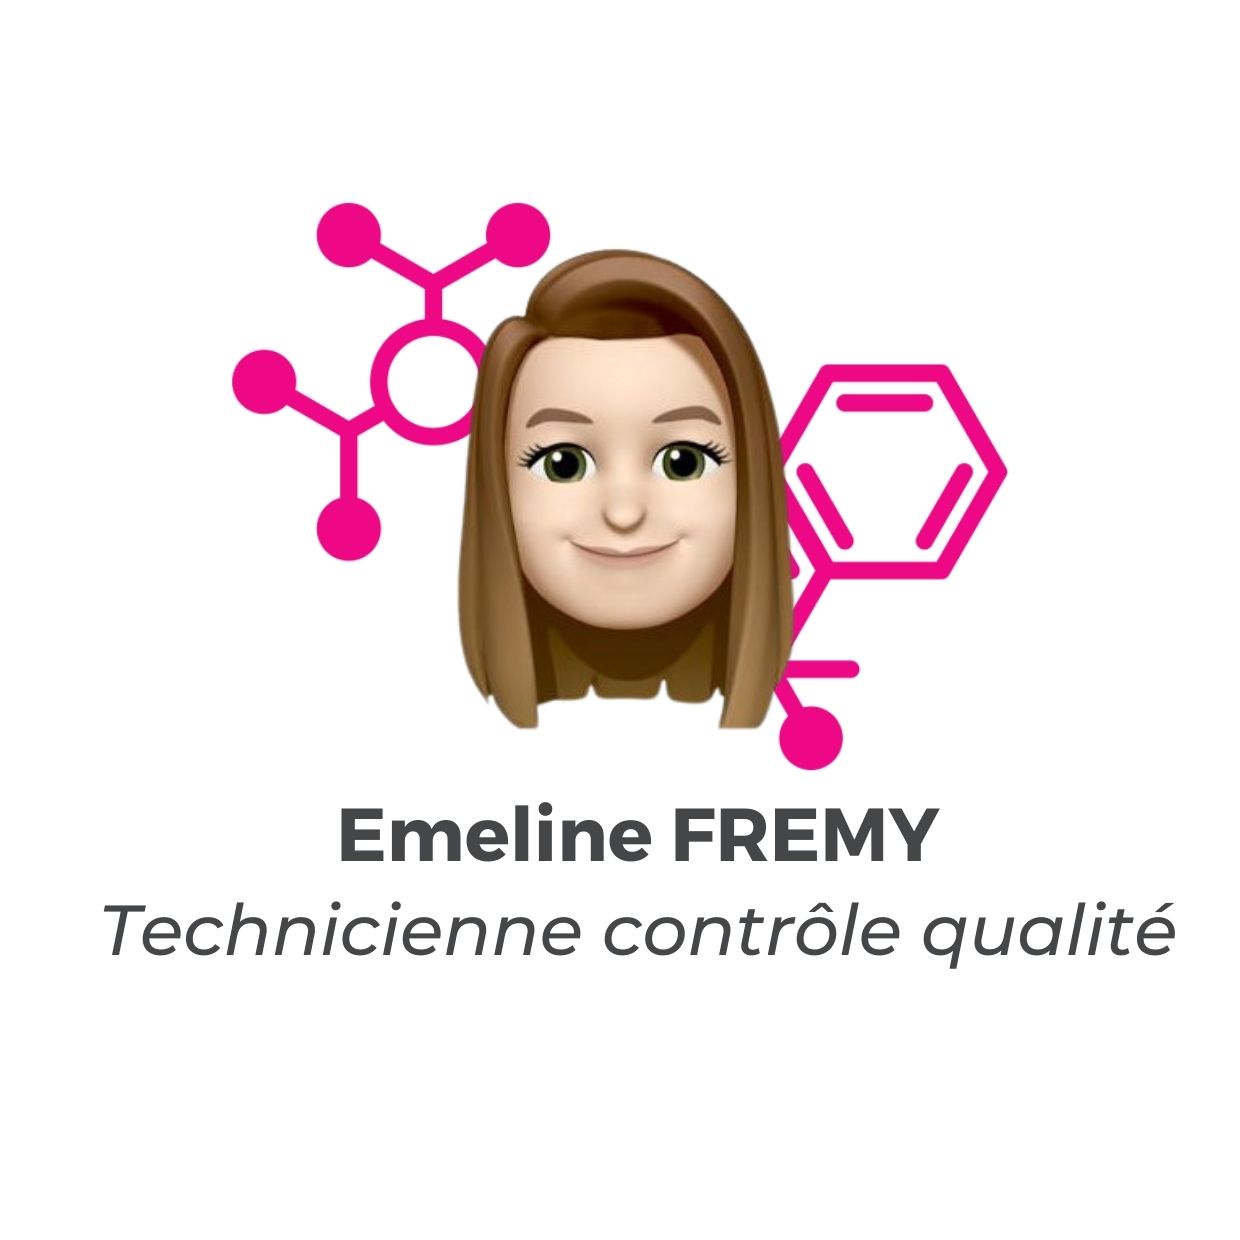 Emeline FREMY